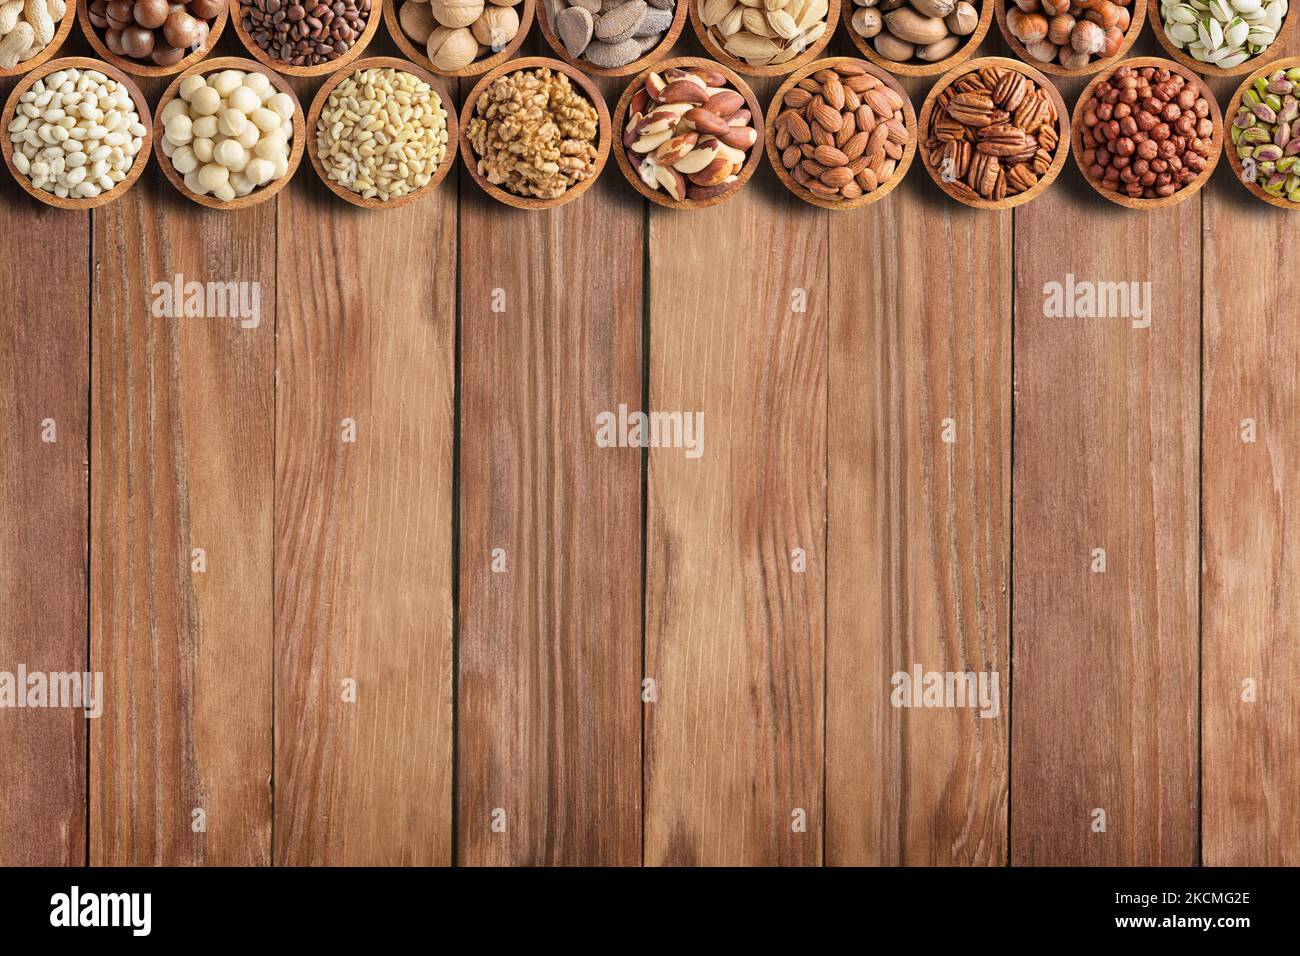 frutta secca e semi vari su tavola di legno con spazio copia. cibo sano sfondo Foto Stock